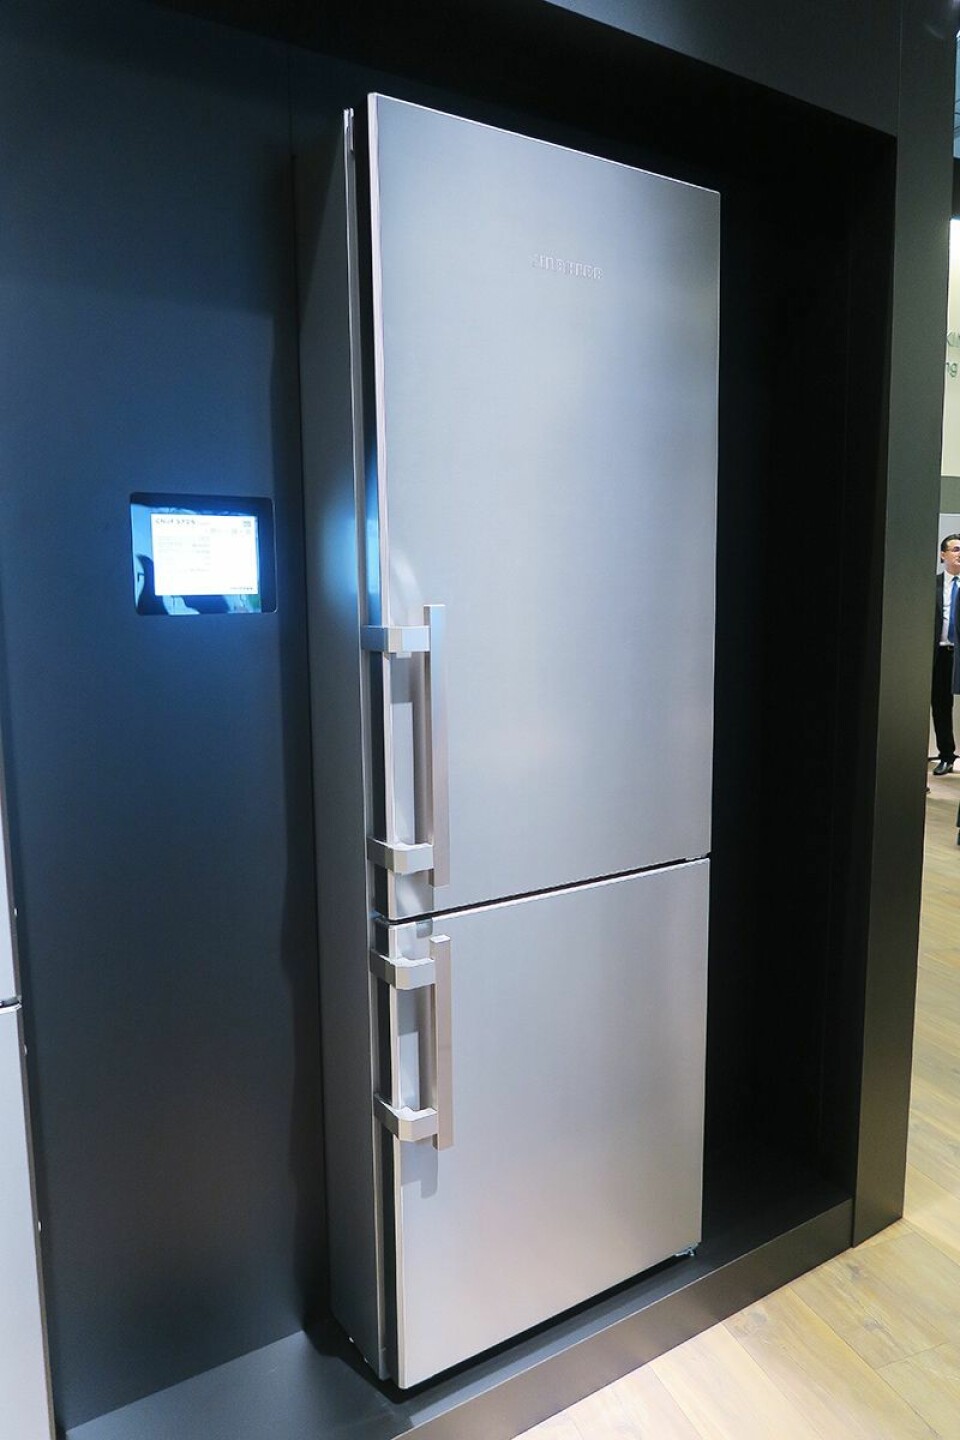 Det nye kjøleskapet Cnef5715 er 201 cm høyt og 70 cm bredt. Foto: Cathrine Pedersen.